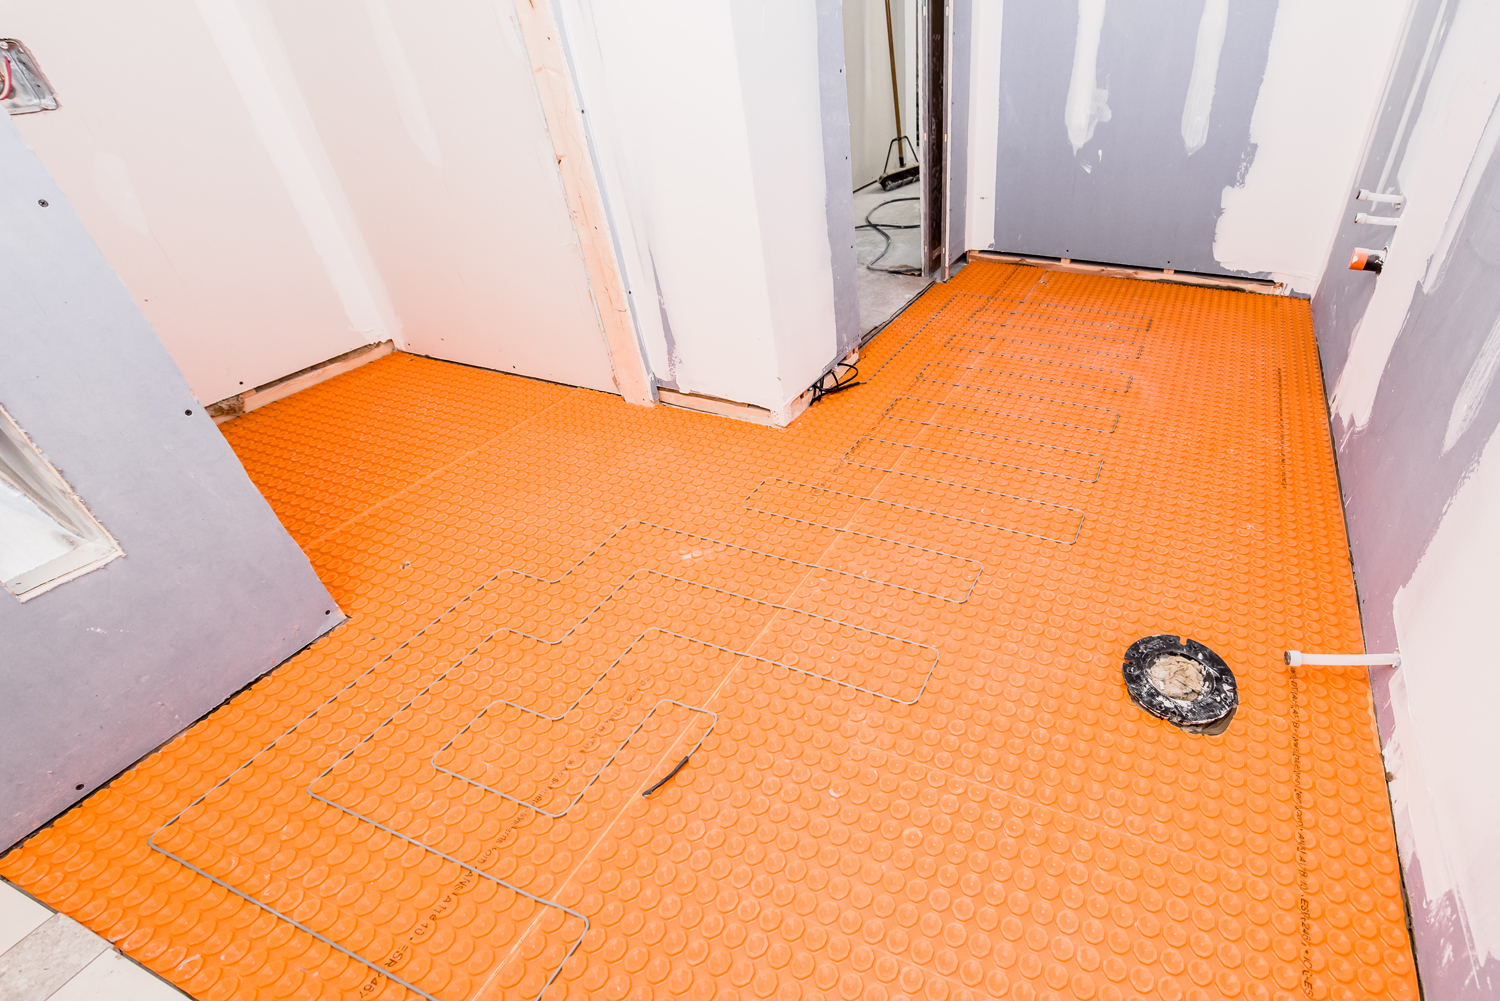 Mid installation of heated floors